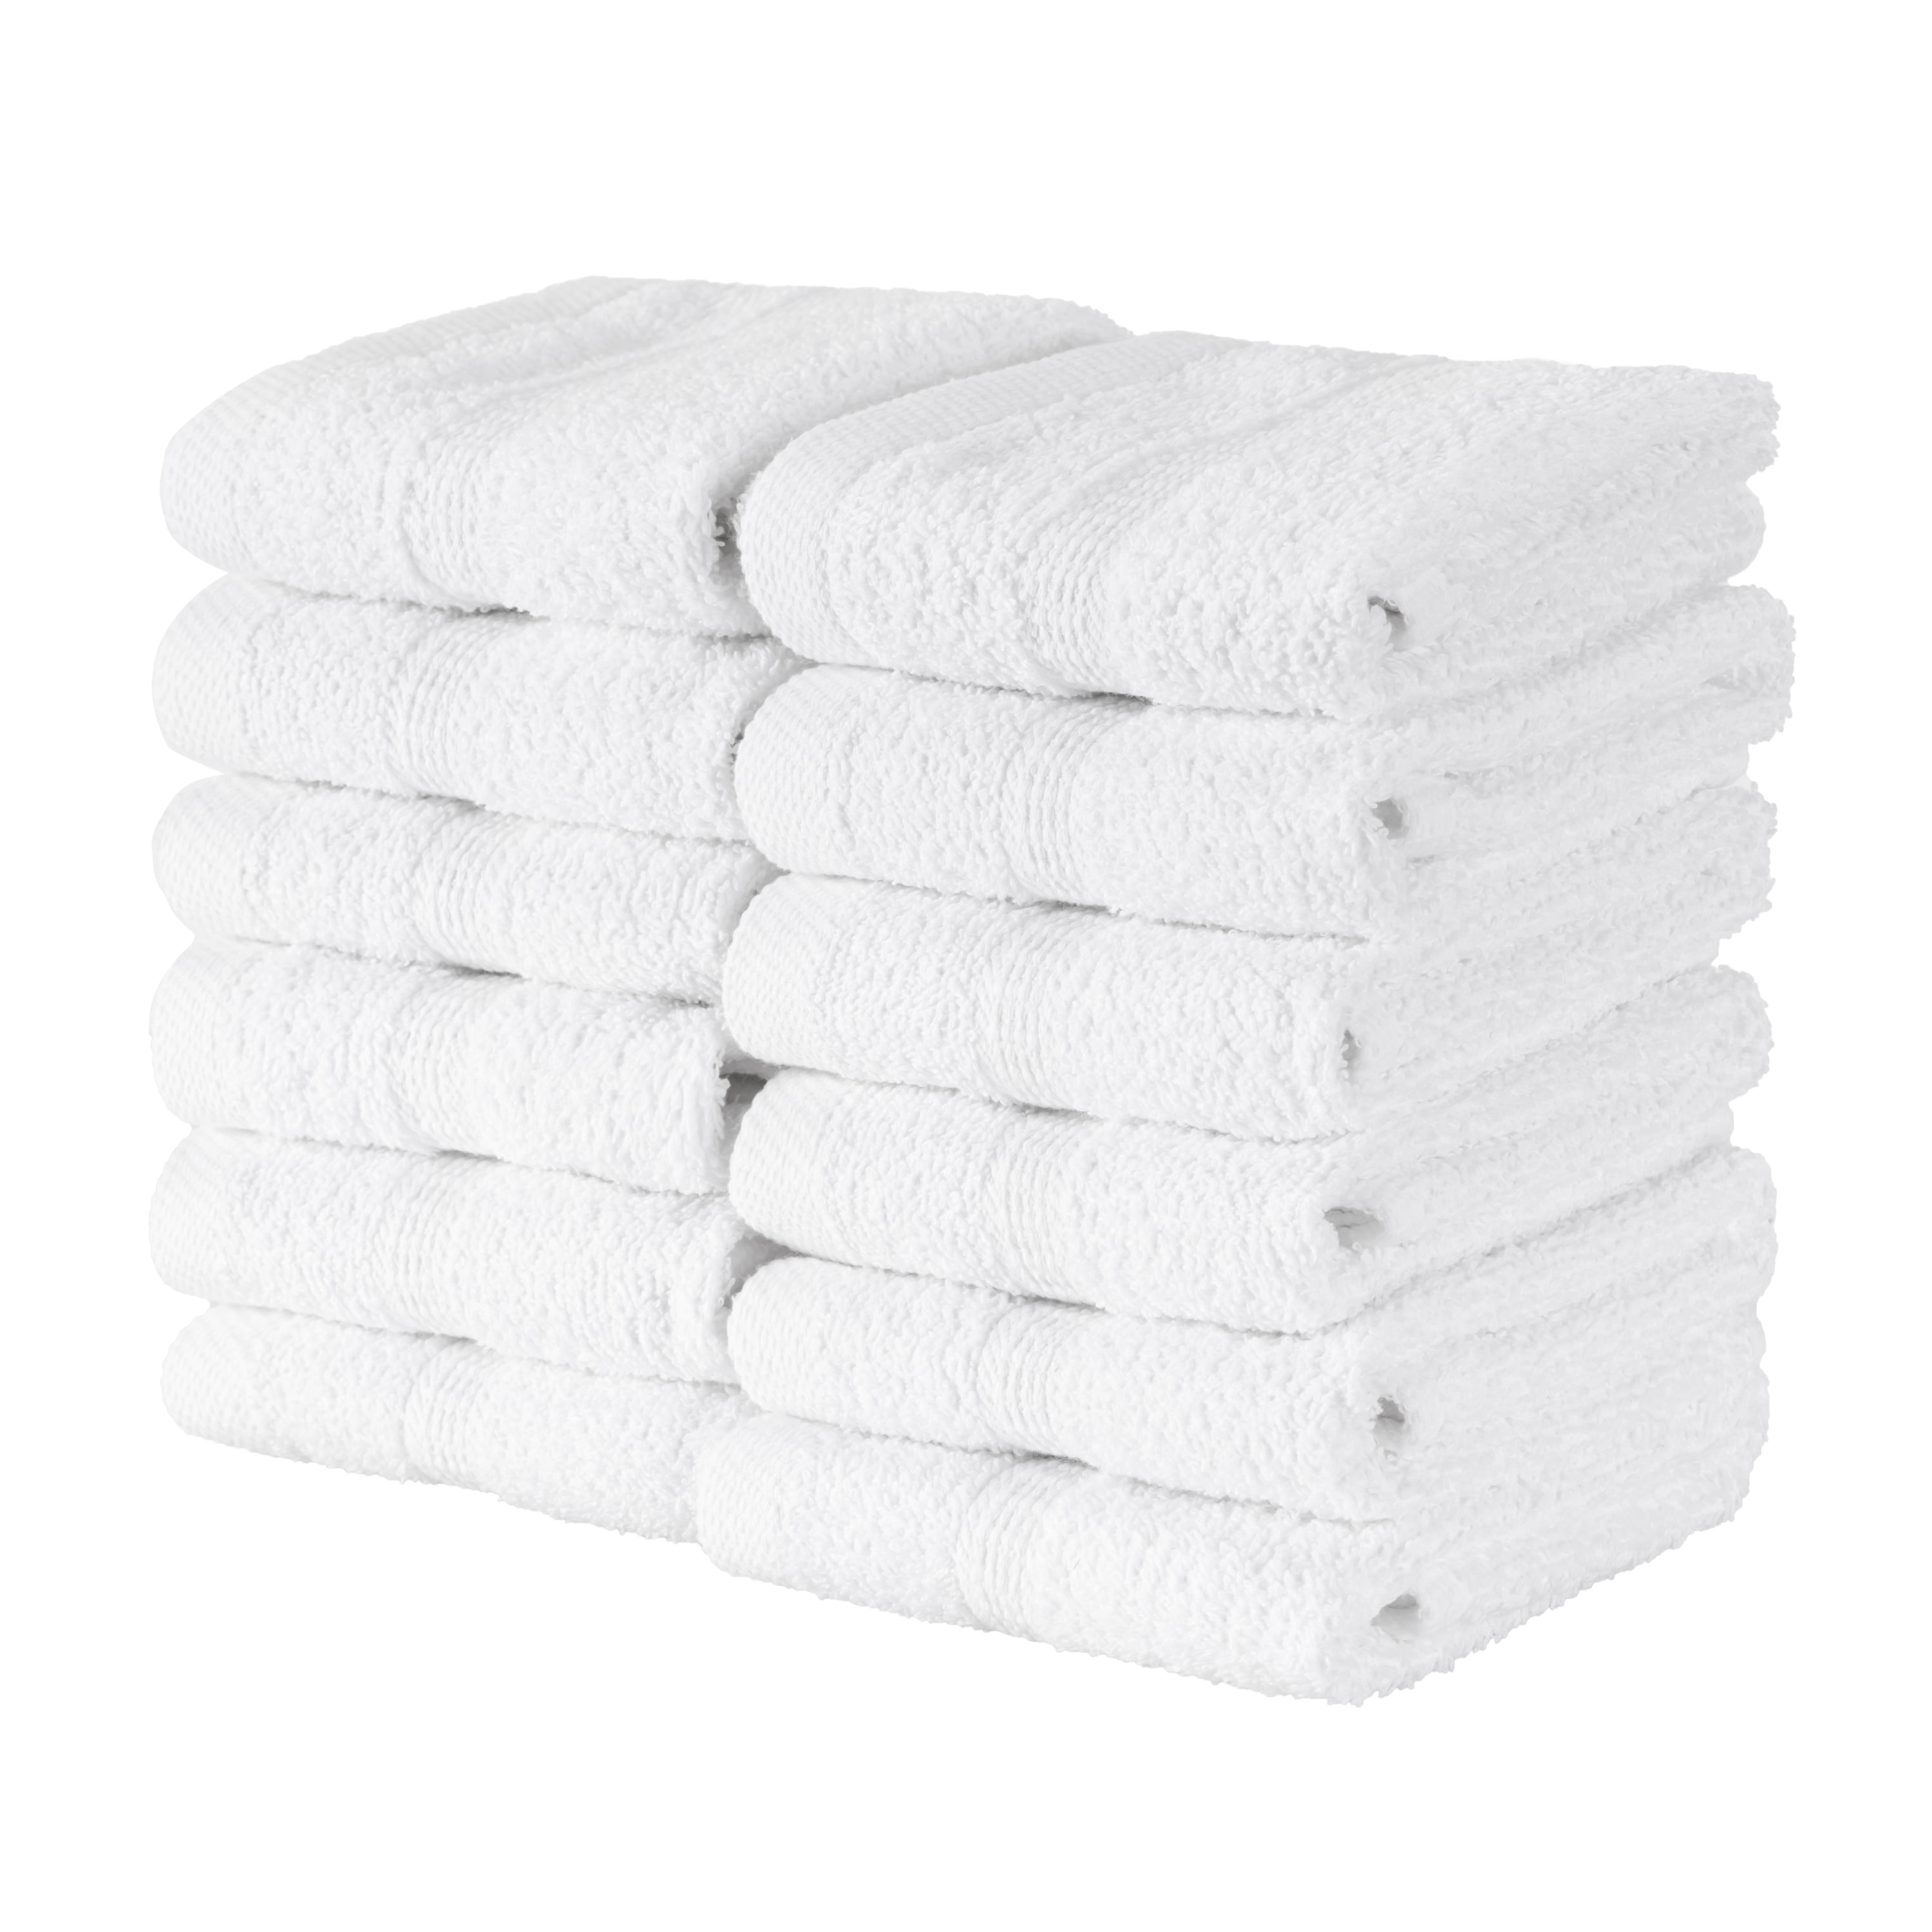 Martex Plain Border Wash Cloths  Color White Pkg of Four  Dozen-Size 12 x 12 